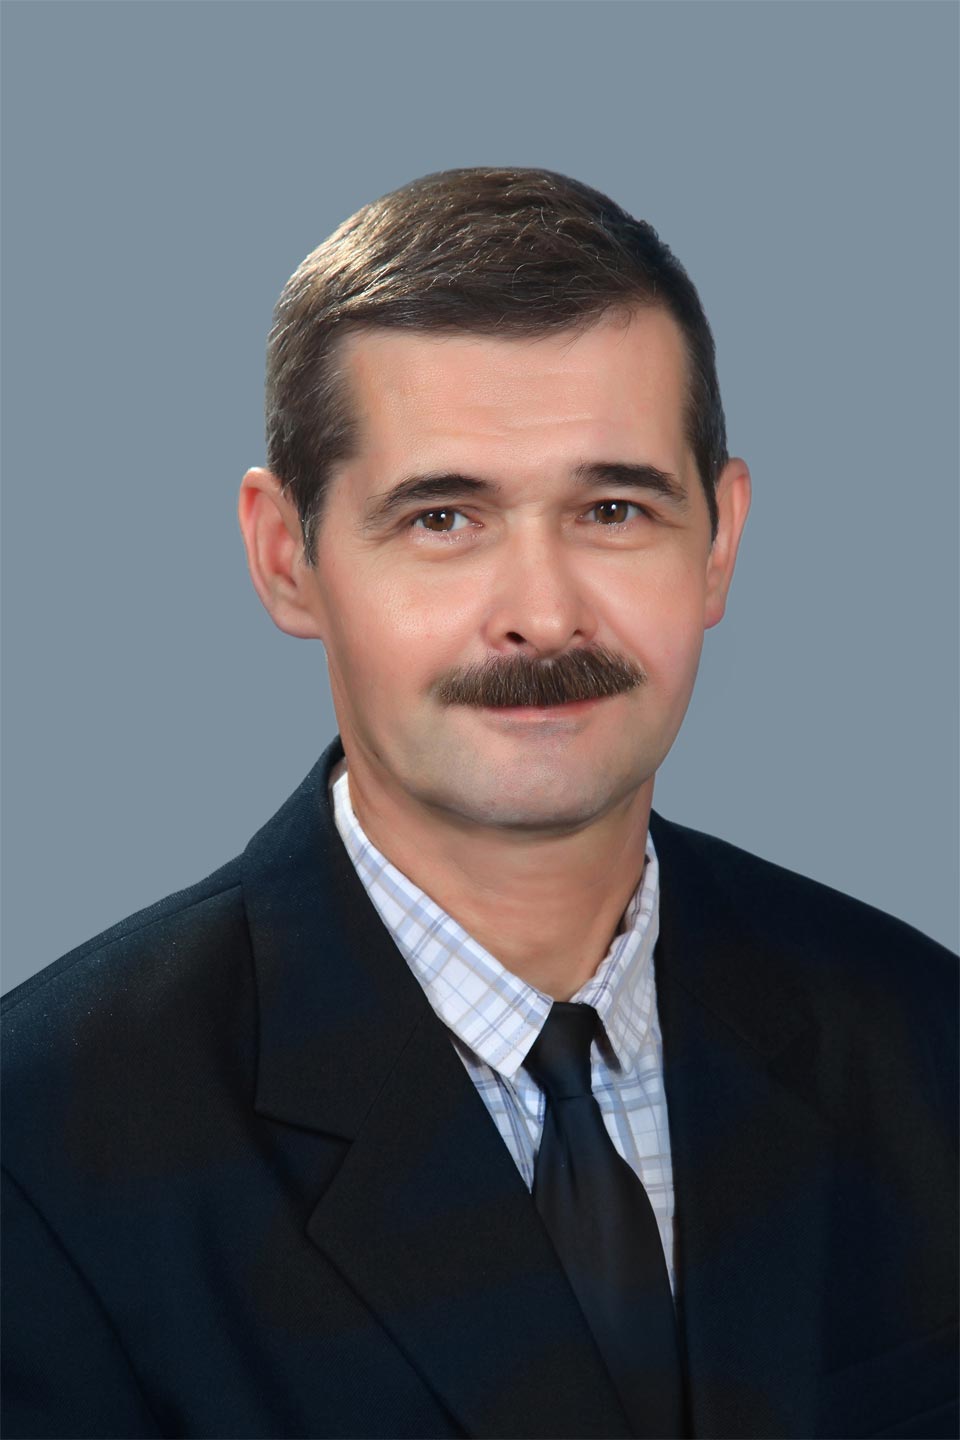 Kostin Anatolii Vasilevich